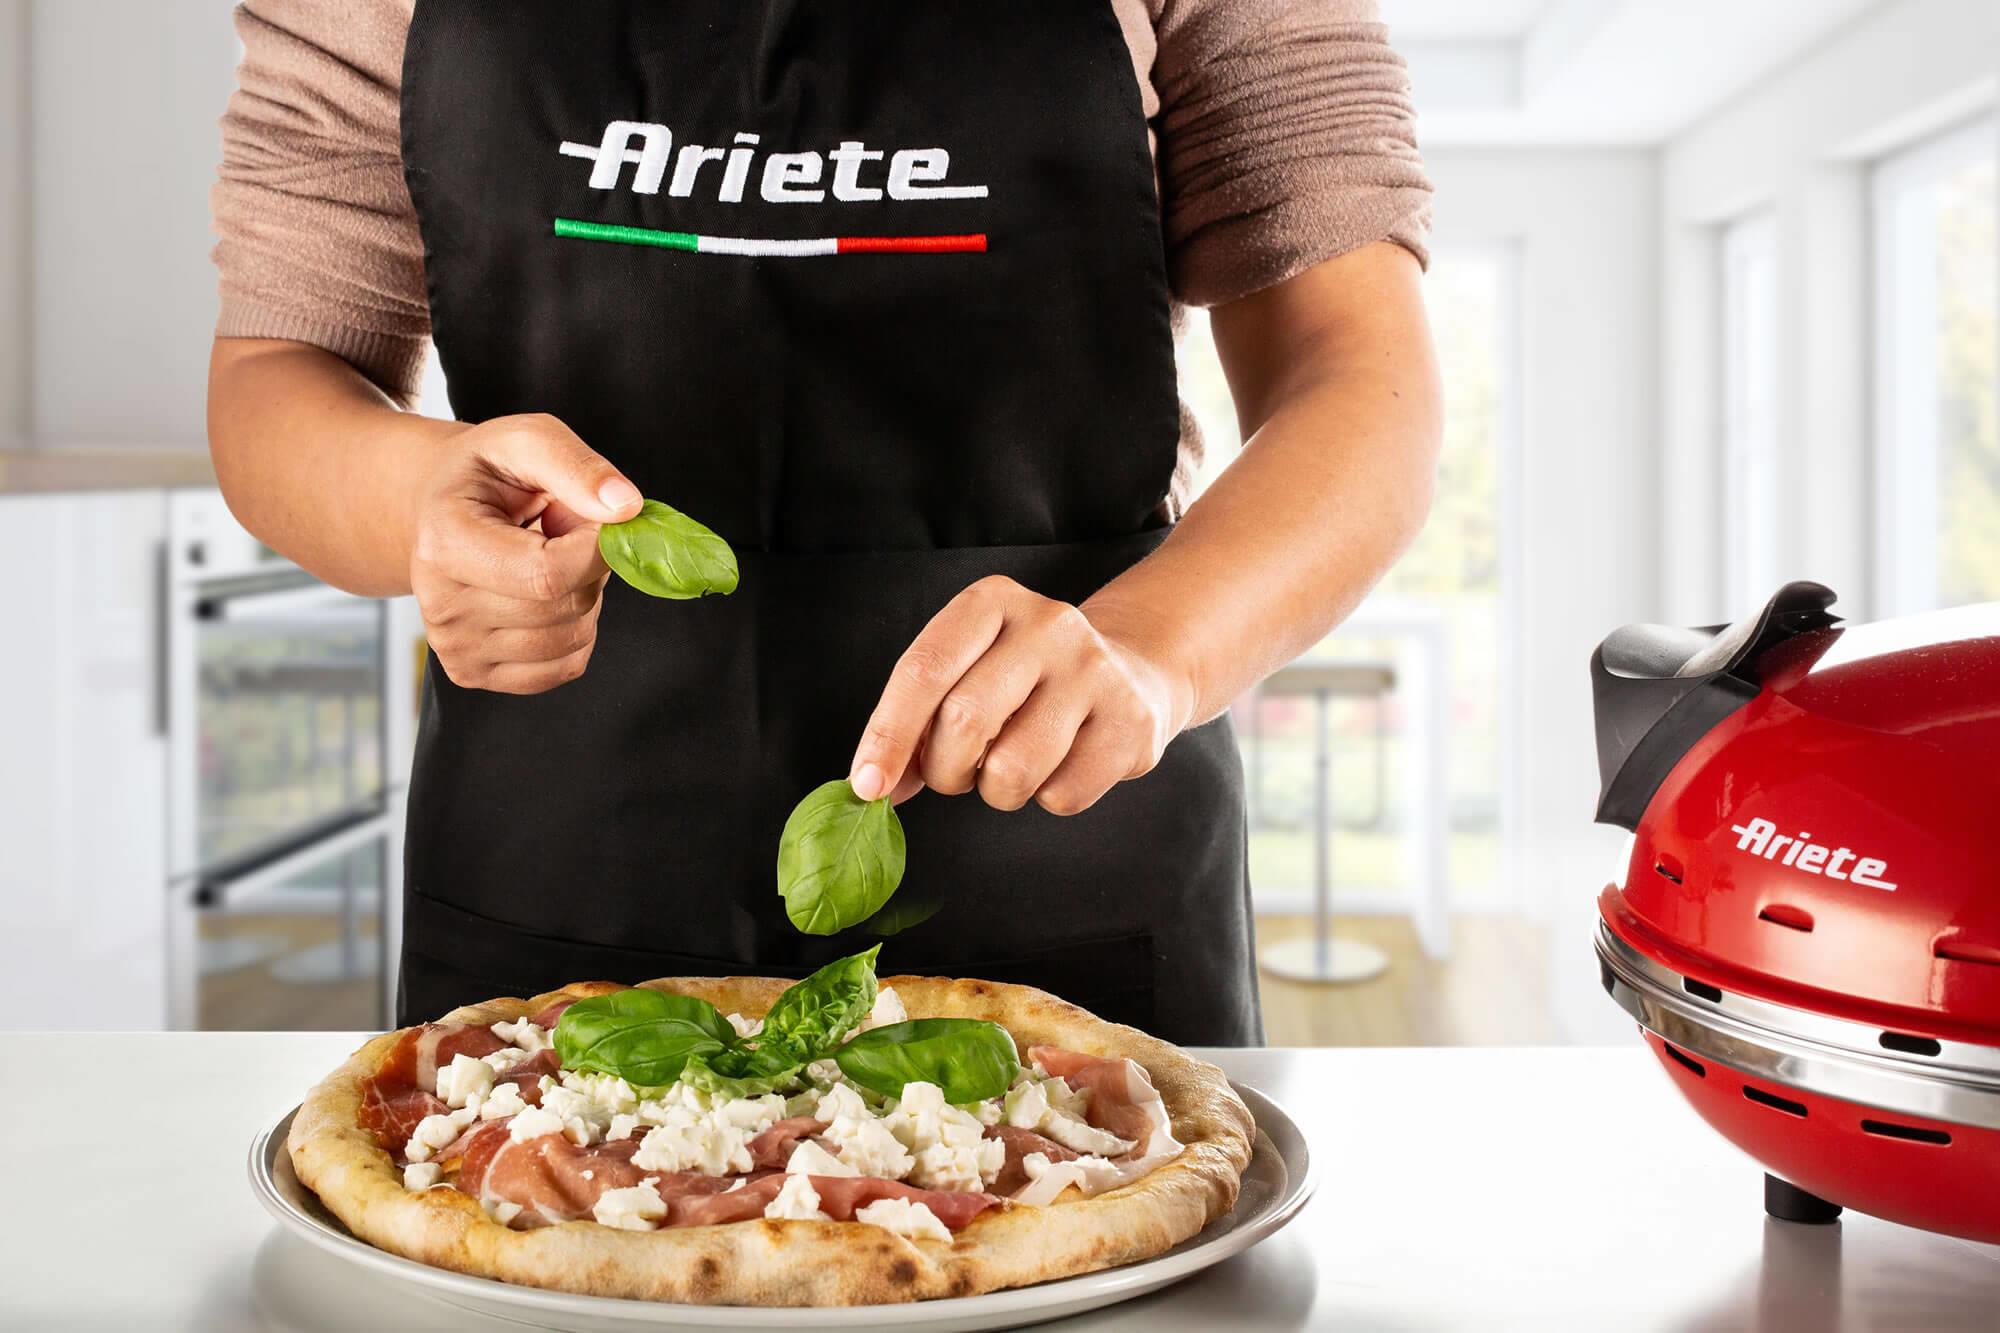 Recensioni clienti: Ariete 909 Pizza 4' Minuti, Forno per  pizza, 1200 W, 5 livelli di cottura, Temperatura Max 400°C, Rosso